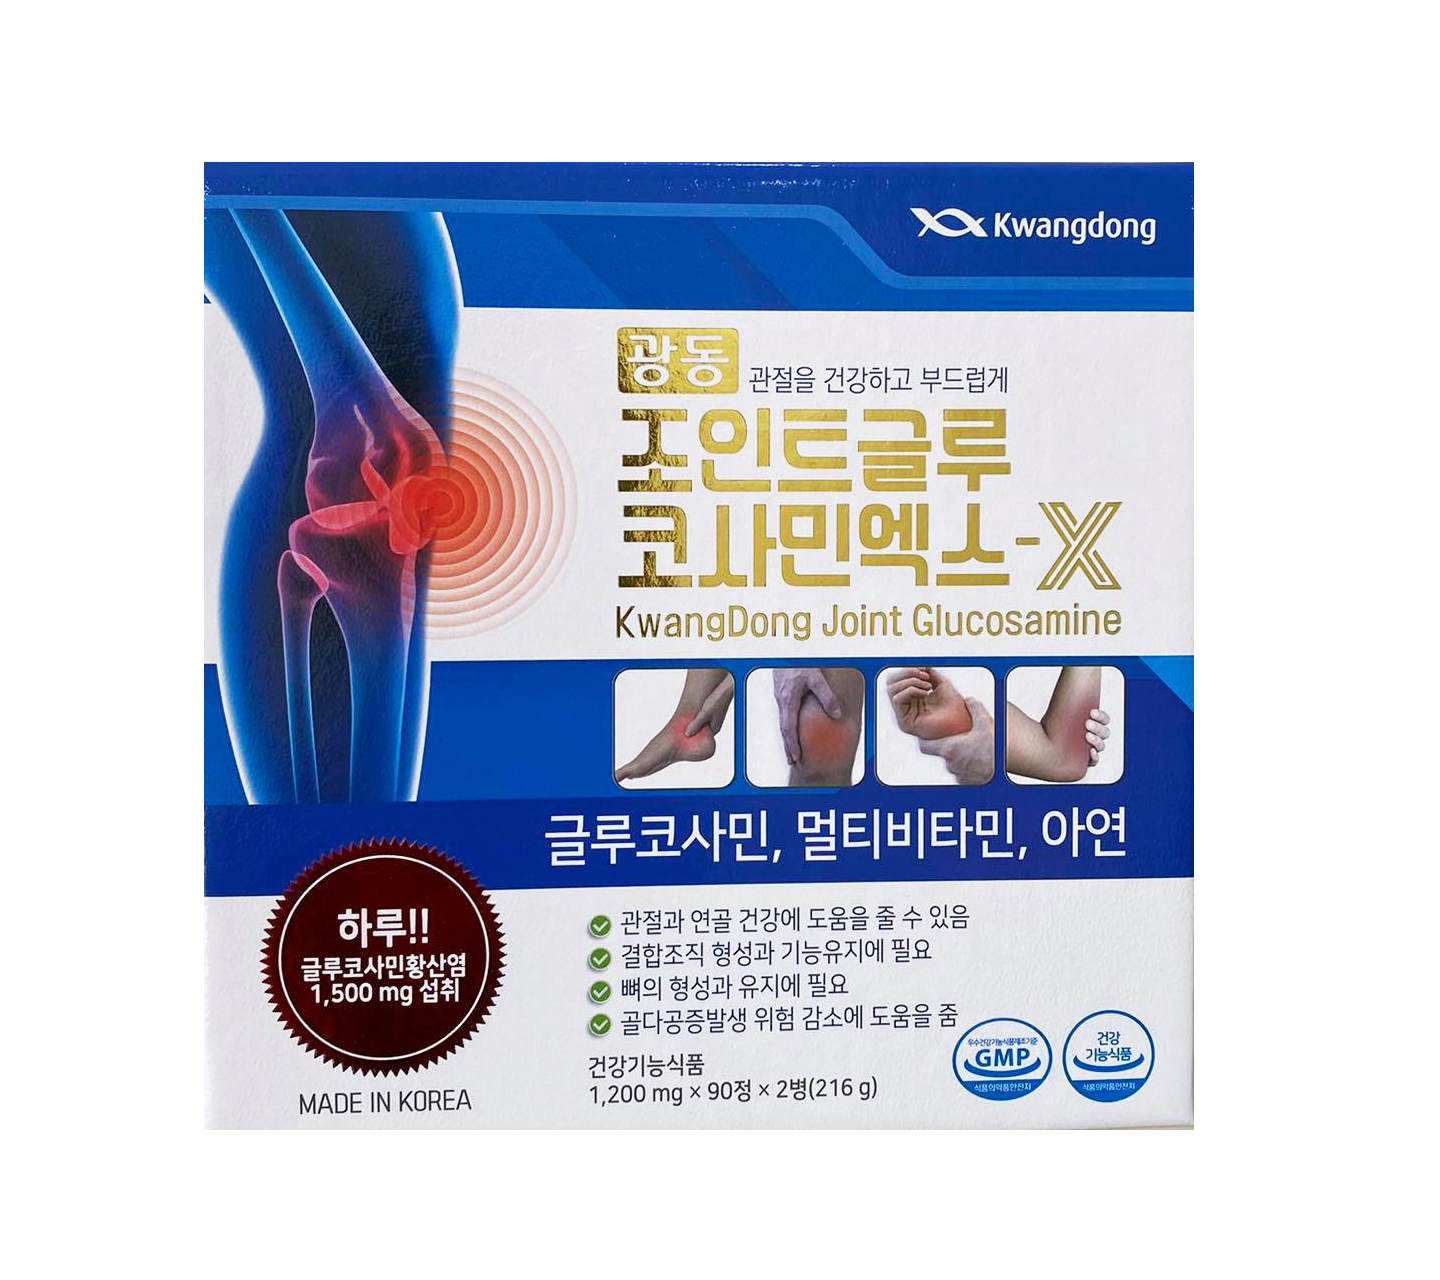 Thuốc xương khớp Kwangdong có công dụng gì?
